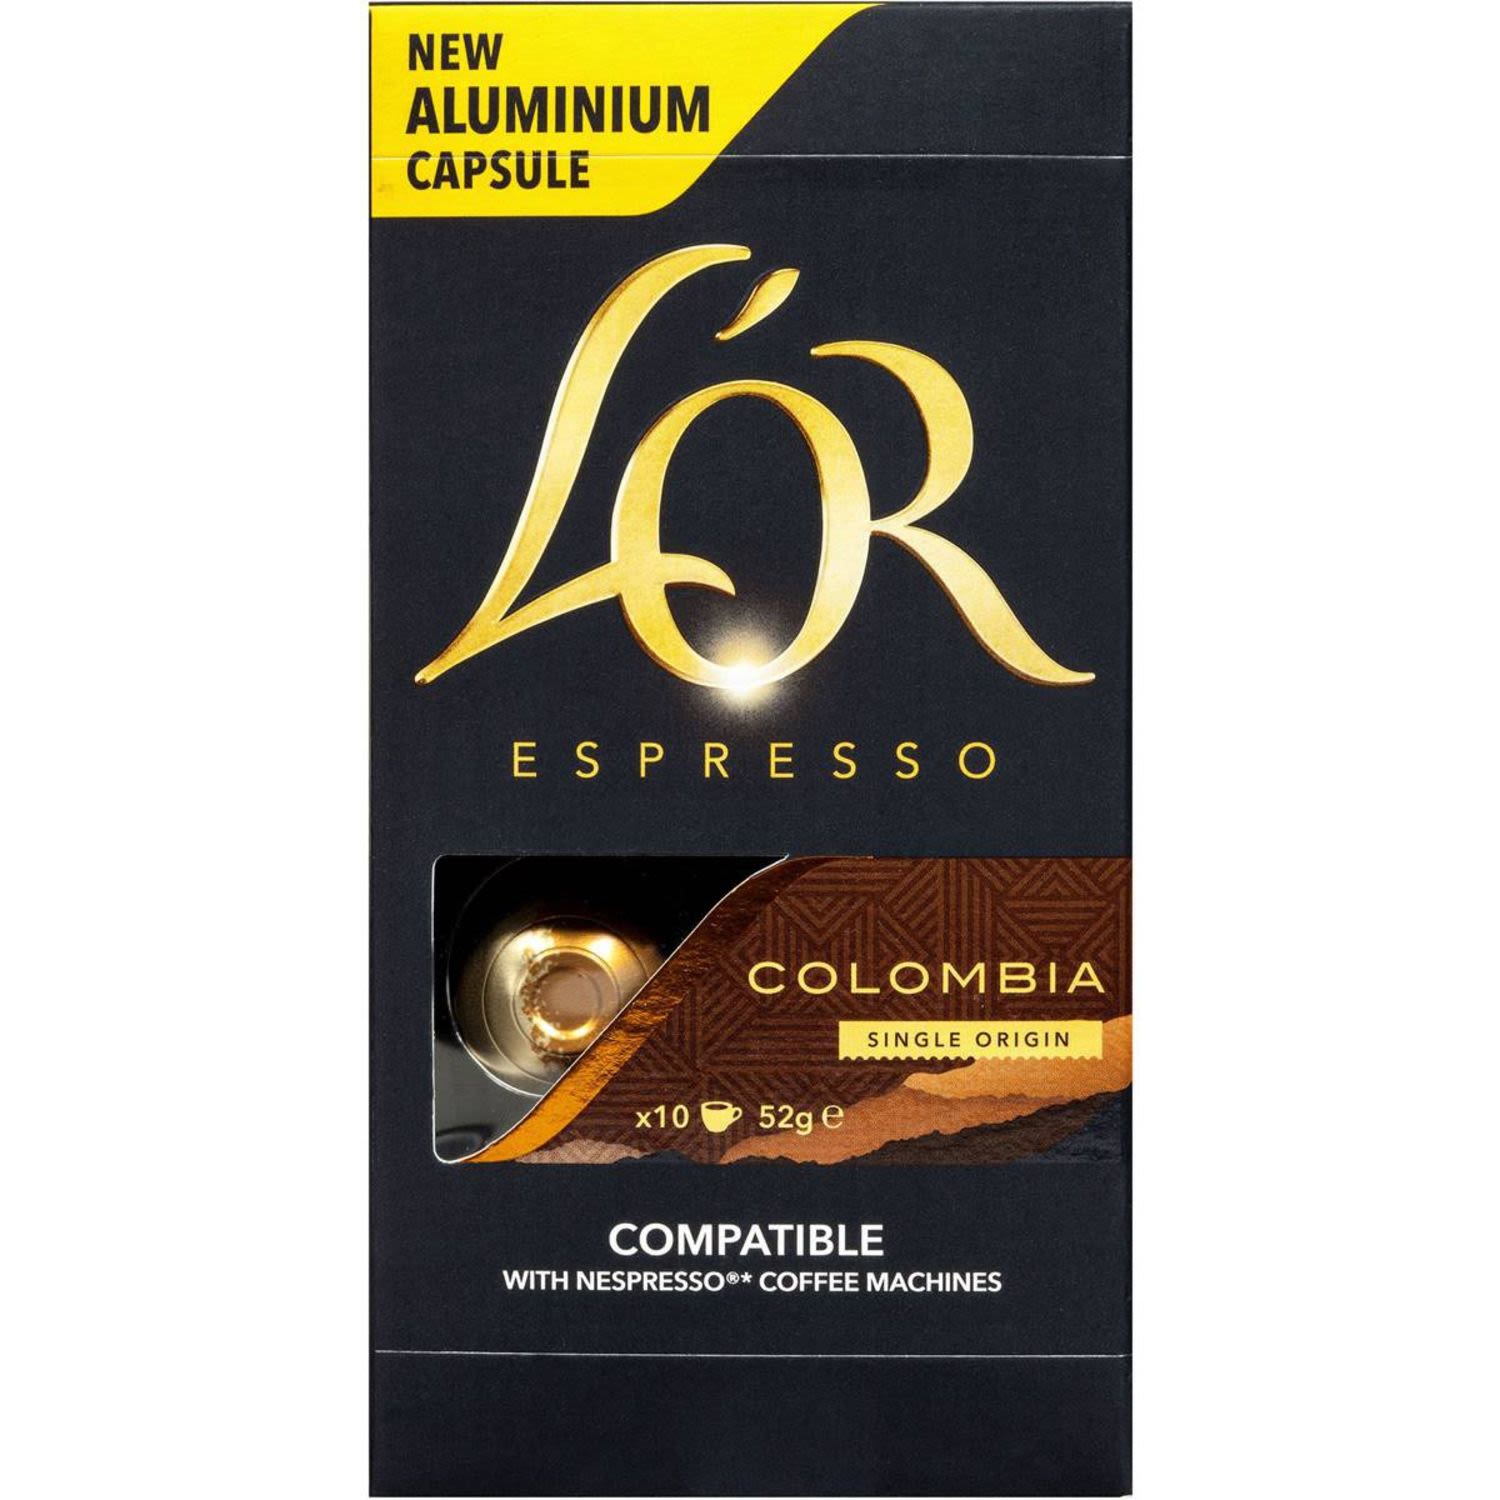 L'OR Espresso Colombia Coffee Capsule, 10 Each